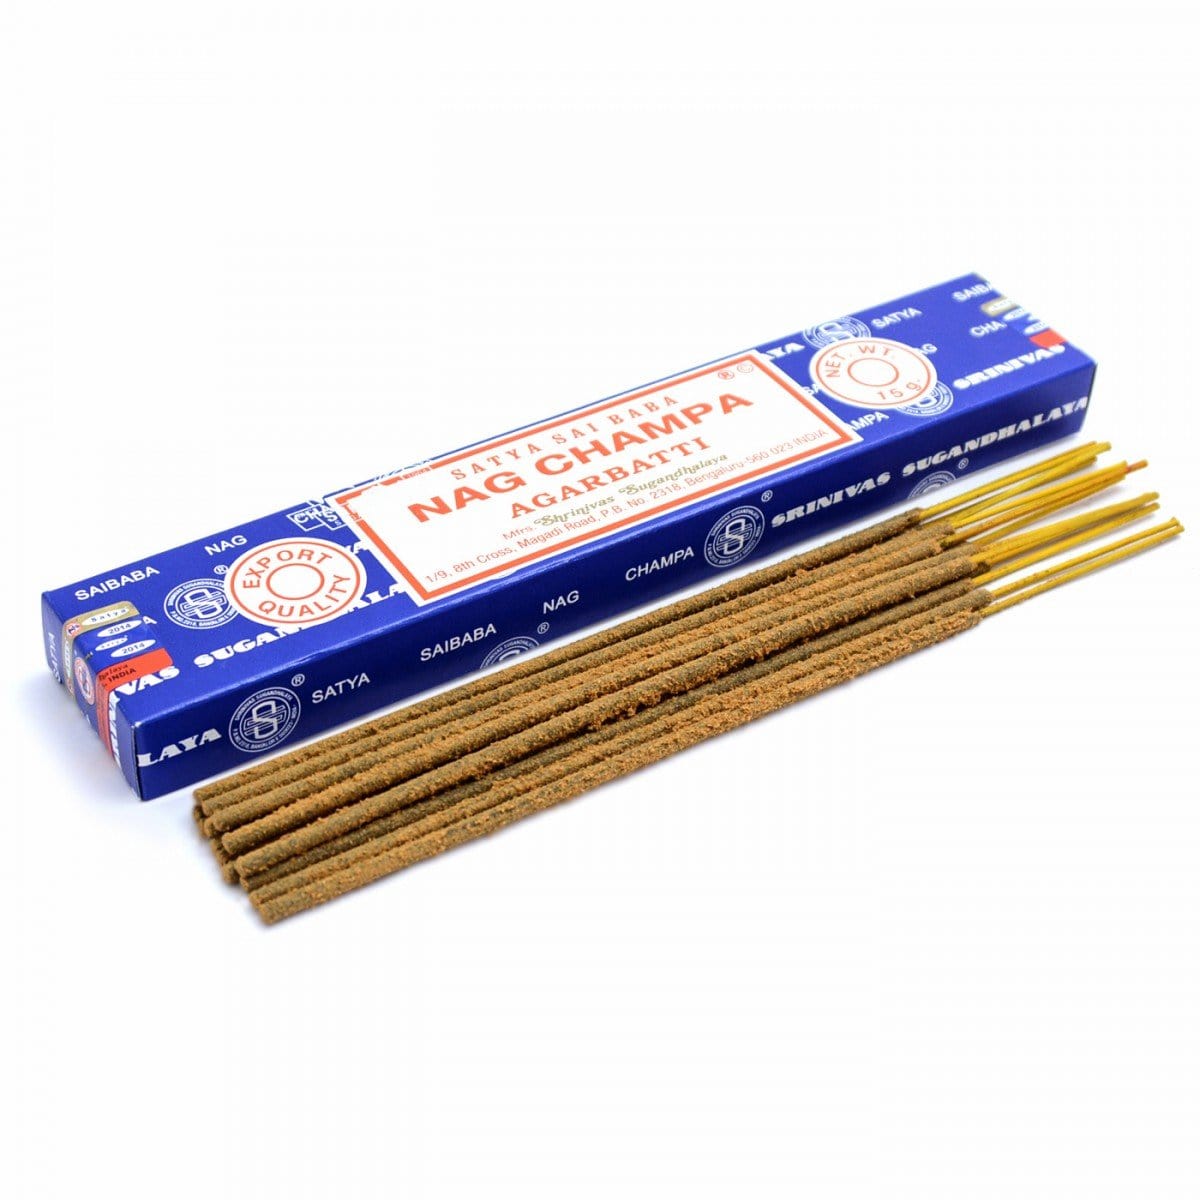 Satya Sai Baba Nag Champa Agarbatti Incense Sticks